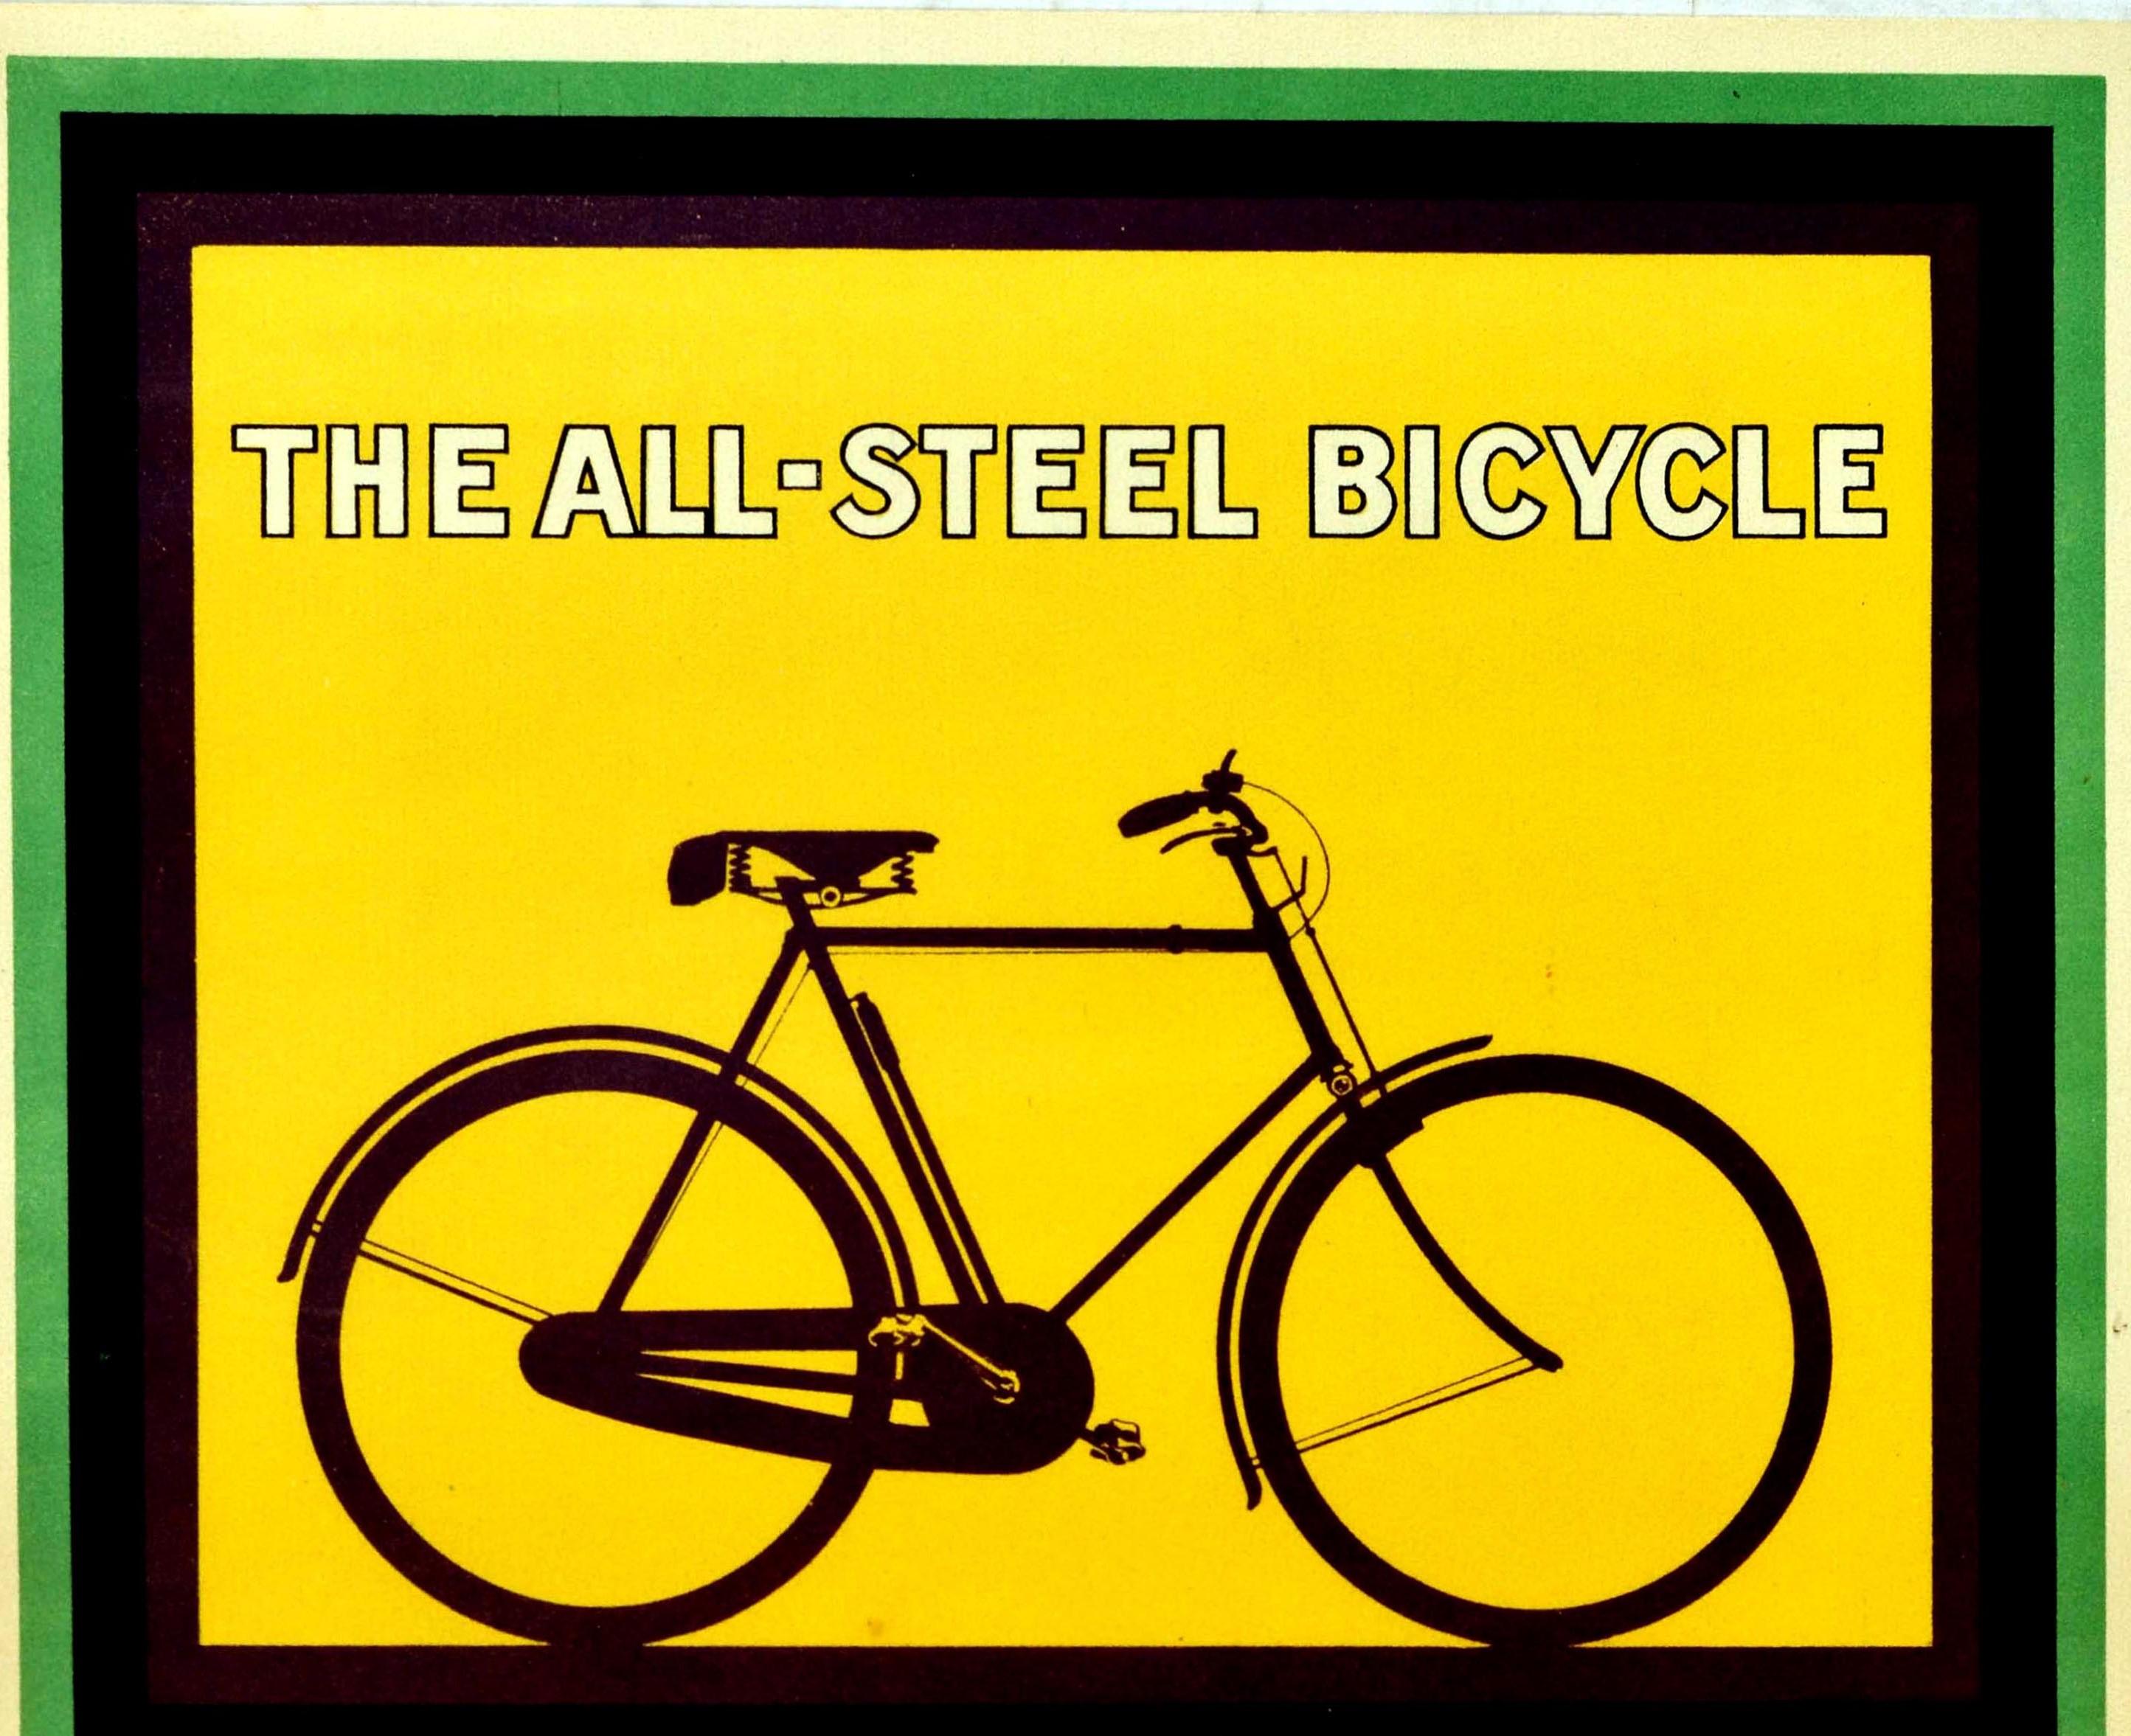 Original Vintage-Werbeplakat für die All Steel Bicycle The Raleigh With Everlasting Guarantee mit einem großen Design einer Silhouette eines Raleigh Fahrrad auf einem gelben Hintergrund mit dem fetten stilisierten weißen Schriftzug in der schwarzen